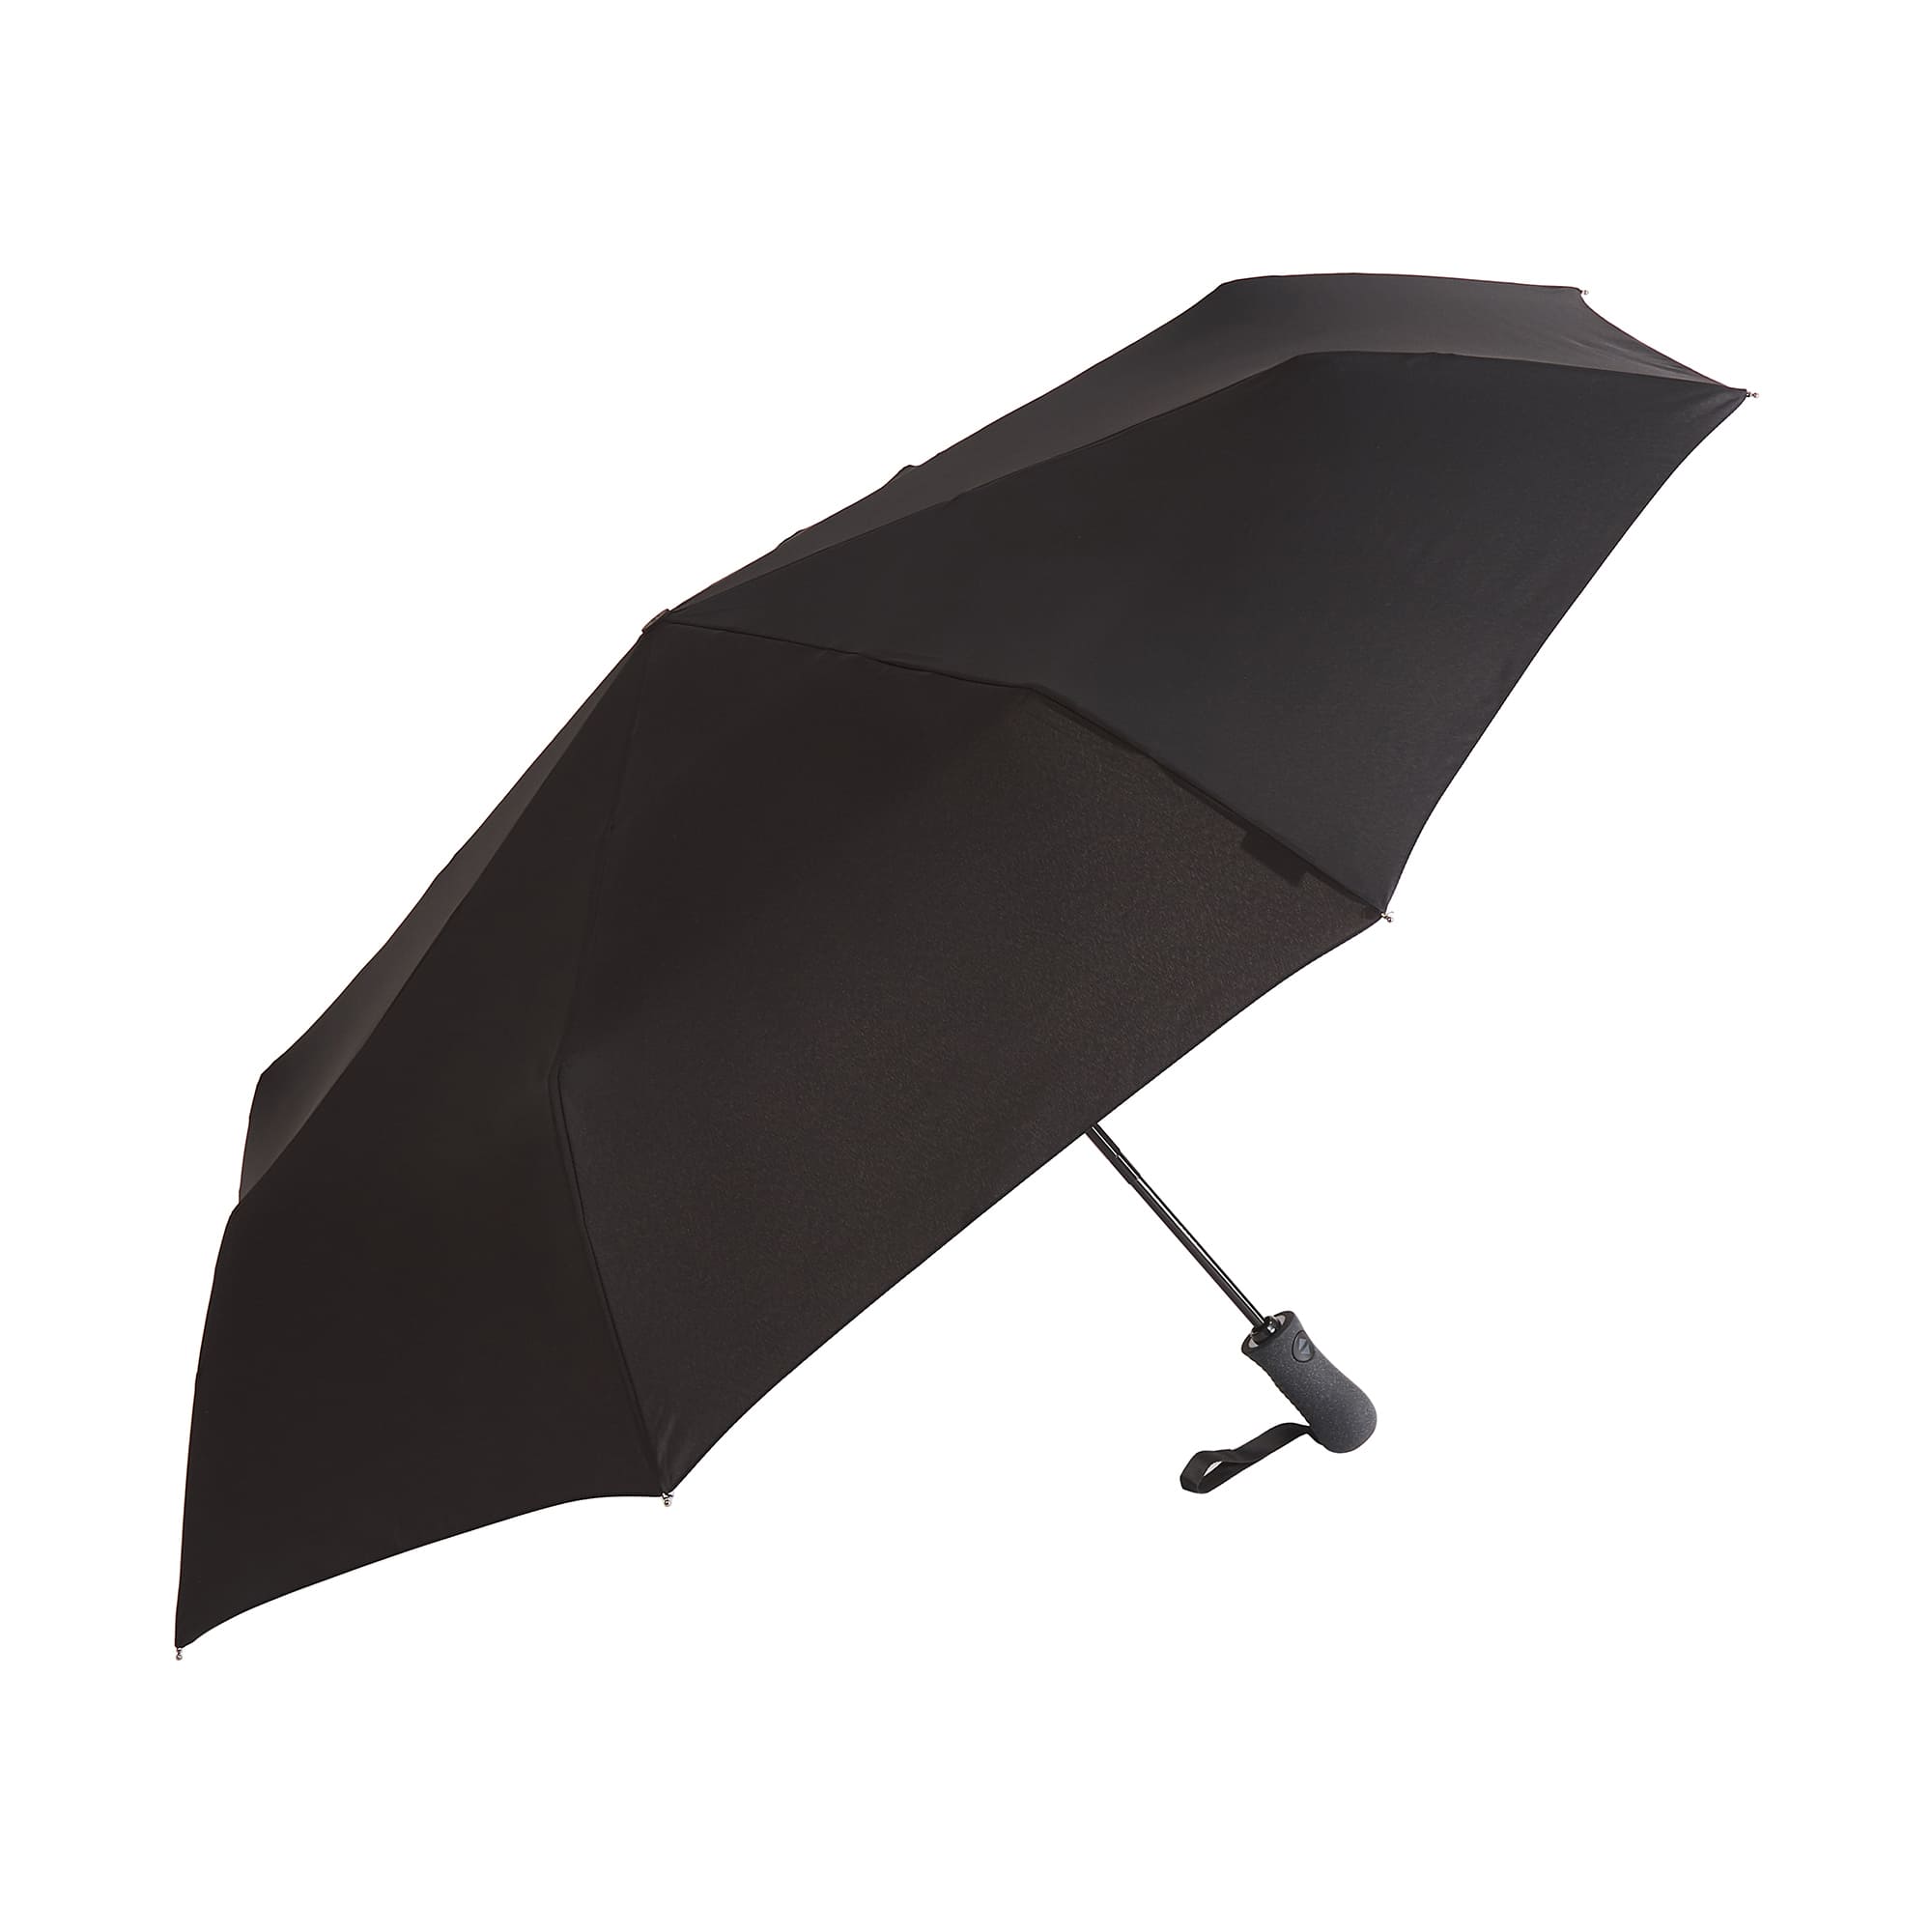 Др.Коффер E418 зонт, цвет черный